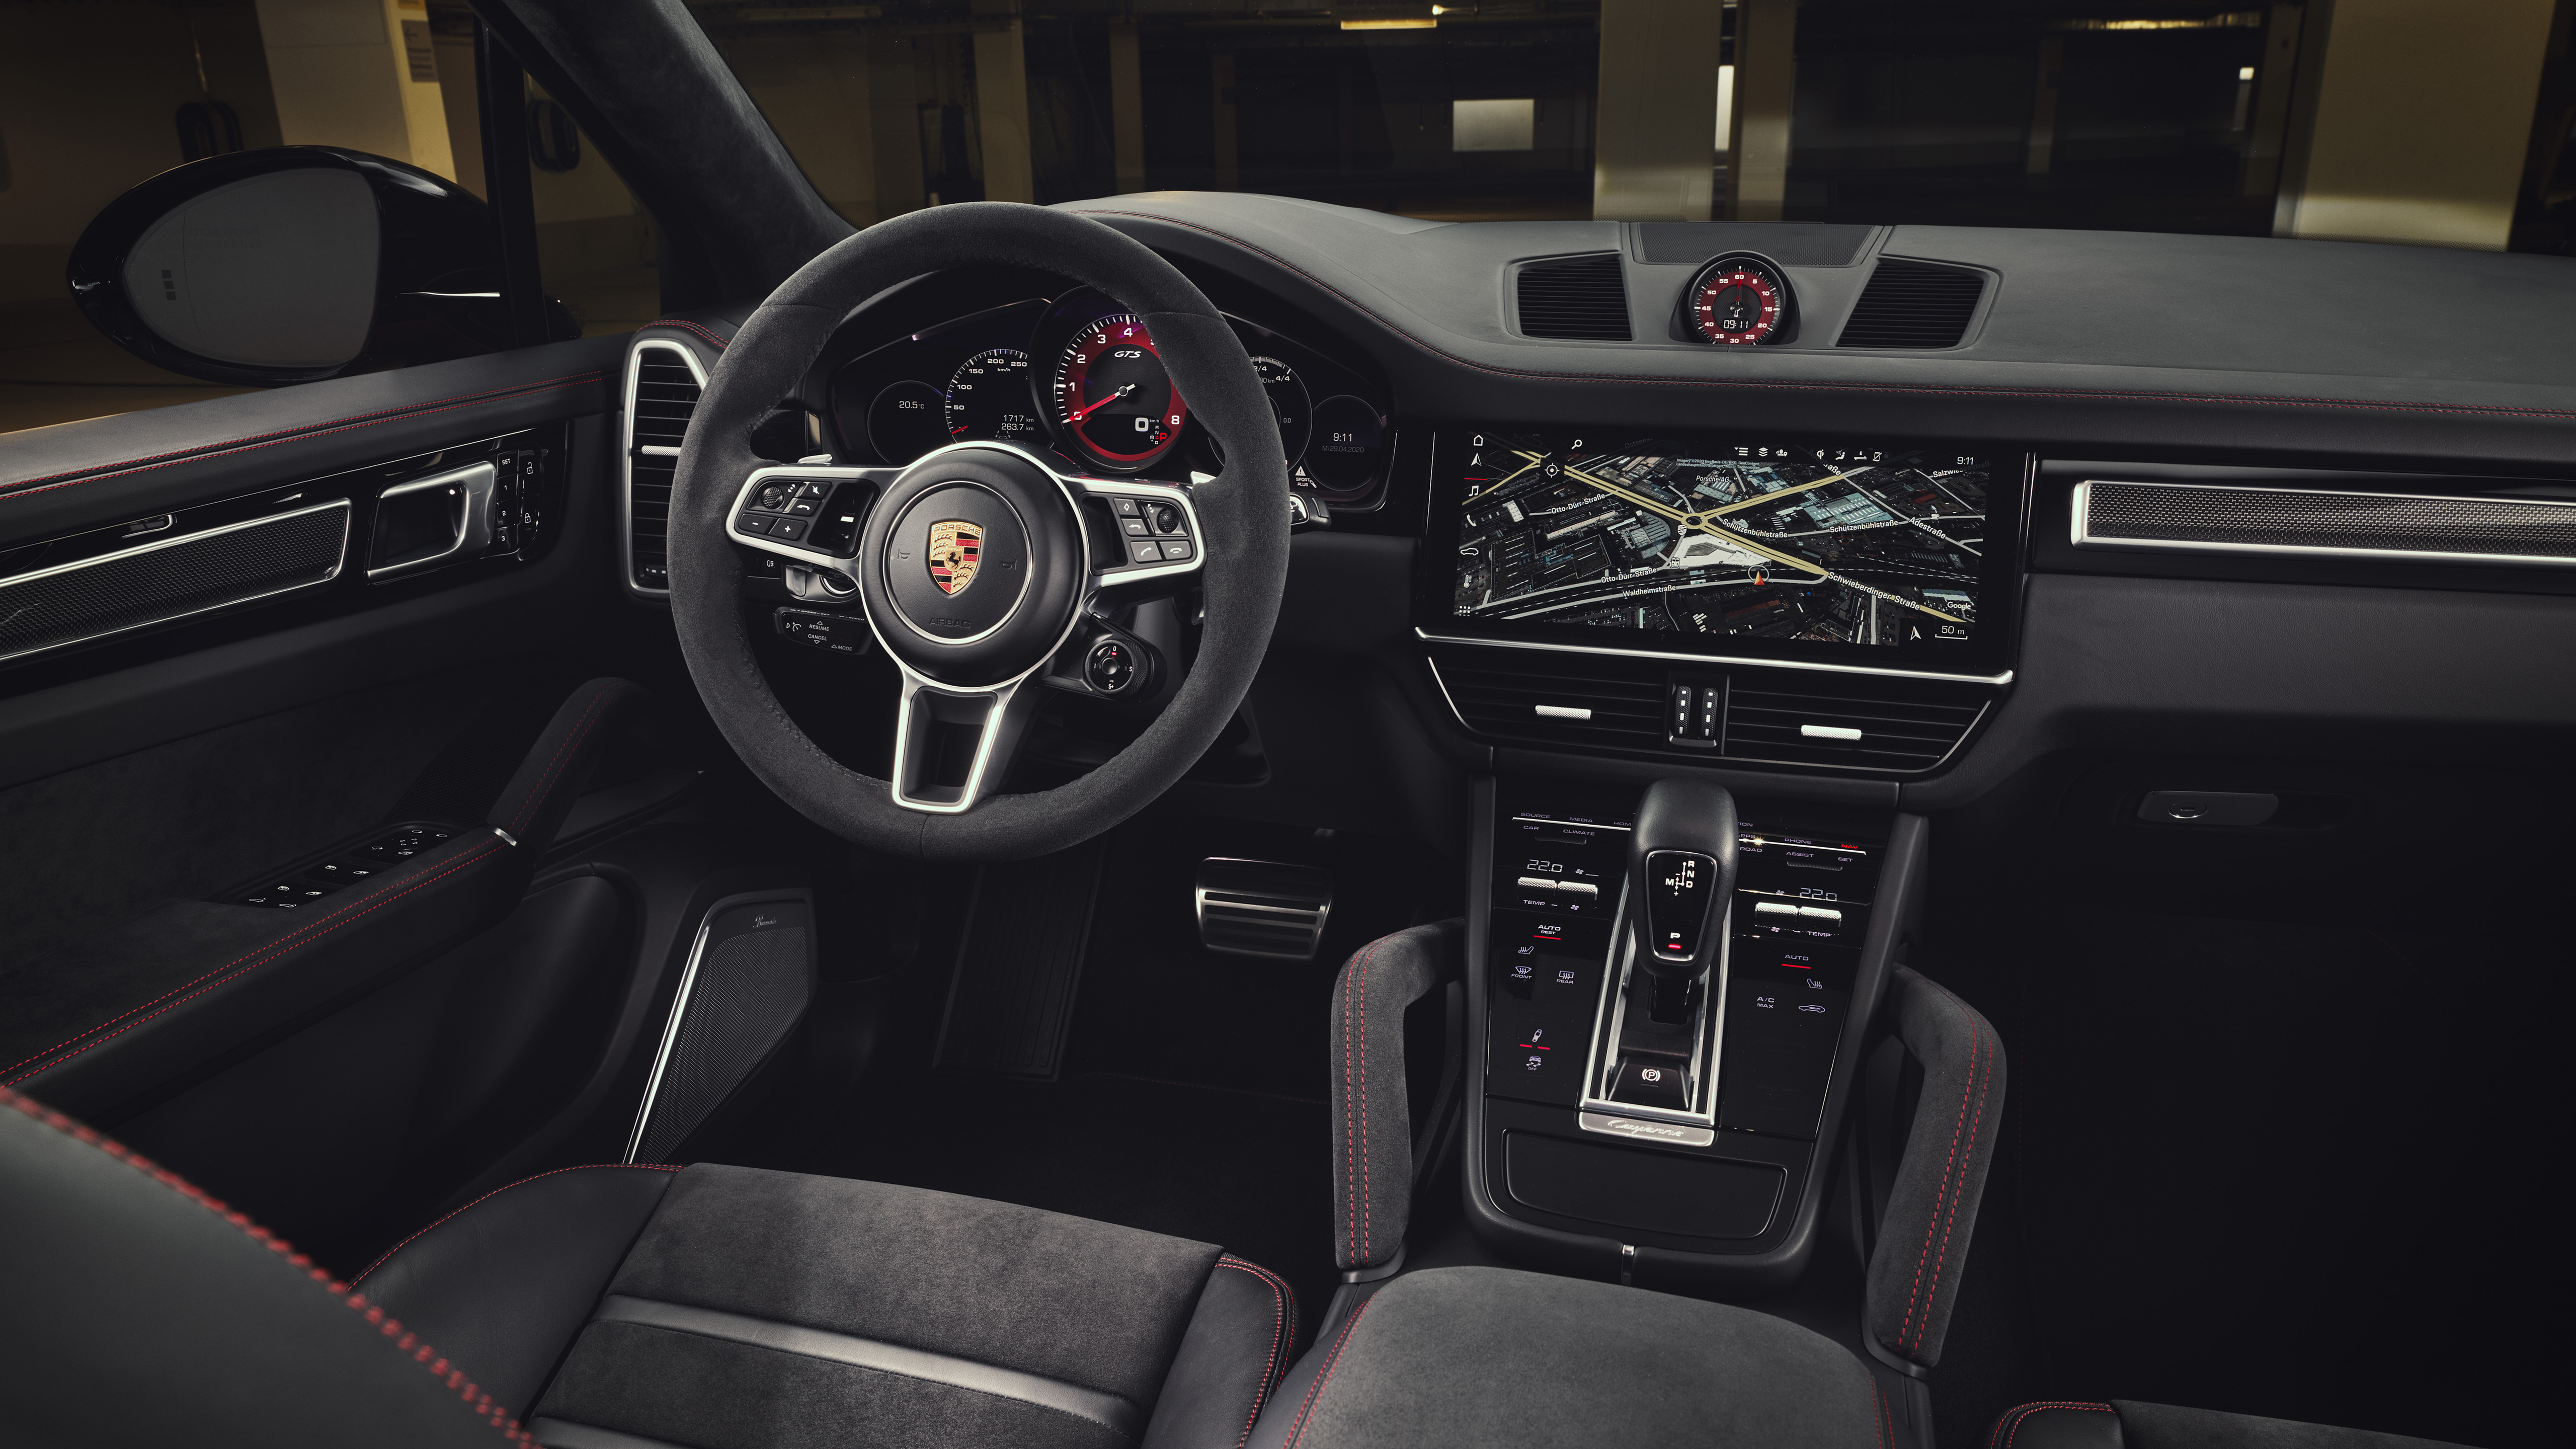 Porsche Cayenne GTS 2020 5K Interior Wallpaper | HD Car Wallpapers | ID #15053